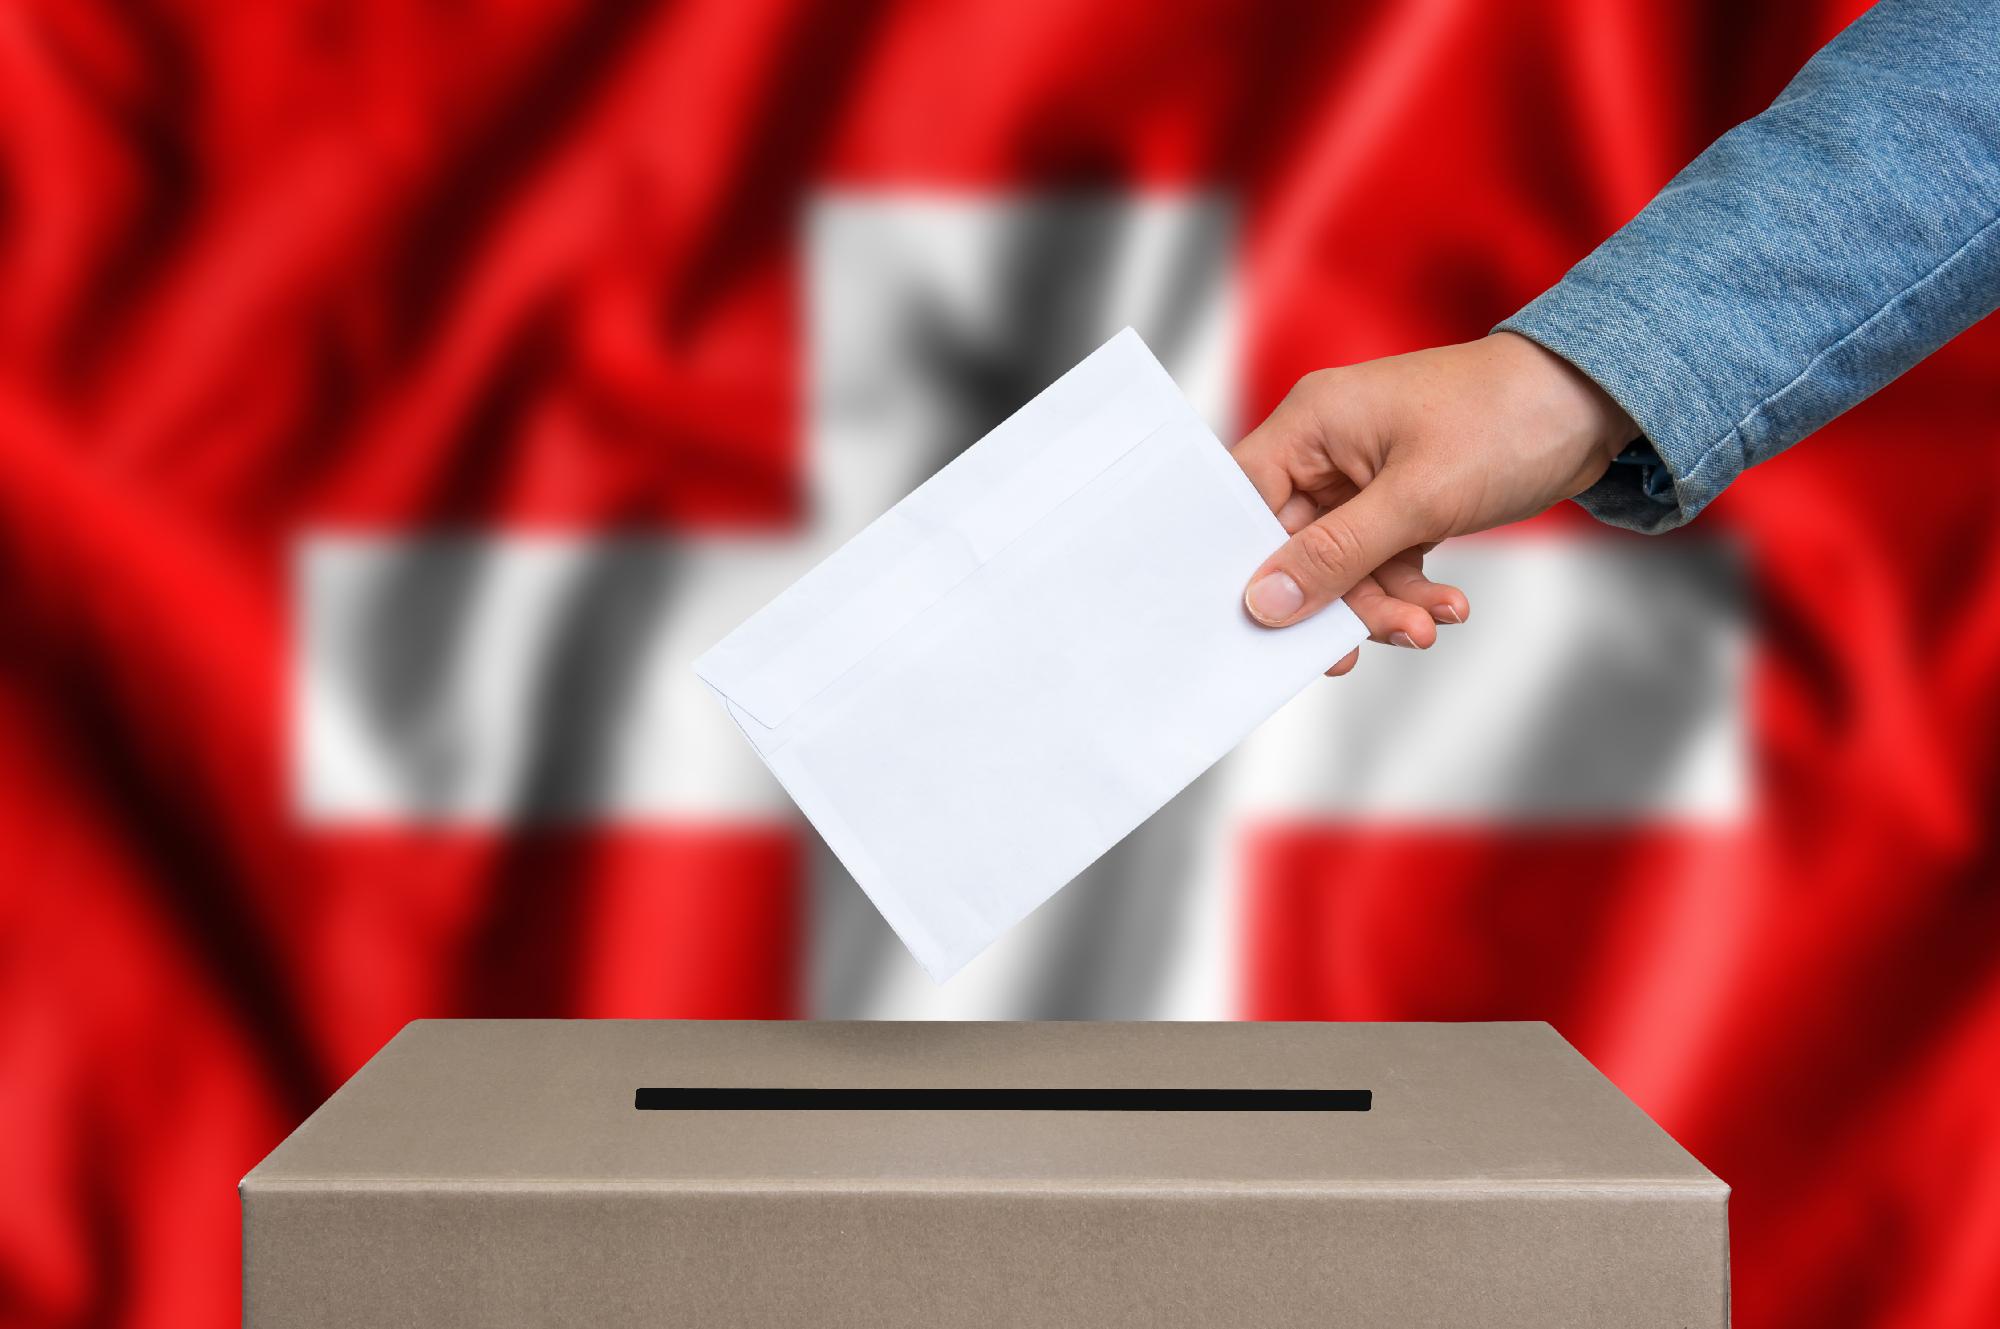 Svájcban népszavazáson elfogadták a nők nyugdíjkorhatárának emelését